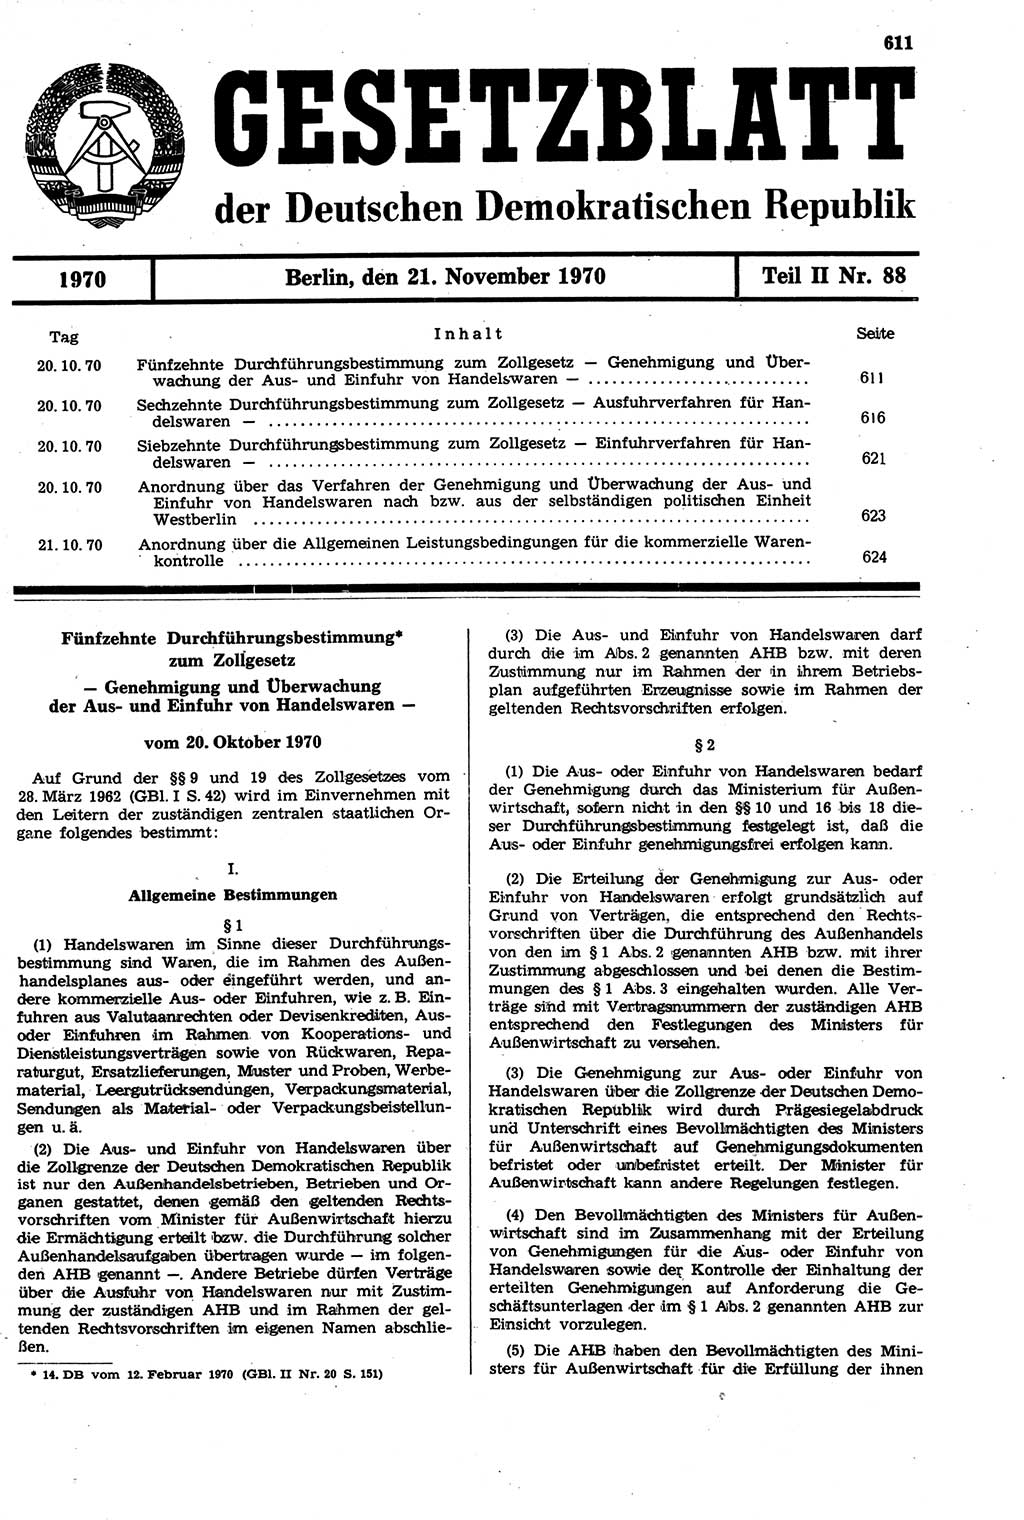 Gesetzblatt (GBl.) der Deutschen Demokratischen Republik (DDR) Teil ⅠⅠ 1970, Seite 611 (GBl. DDR ⅠⅠ 1970, S. 611)